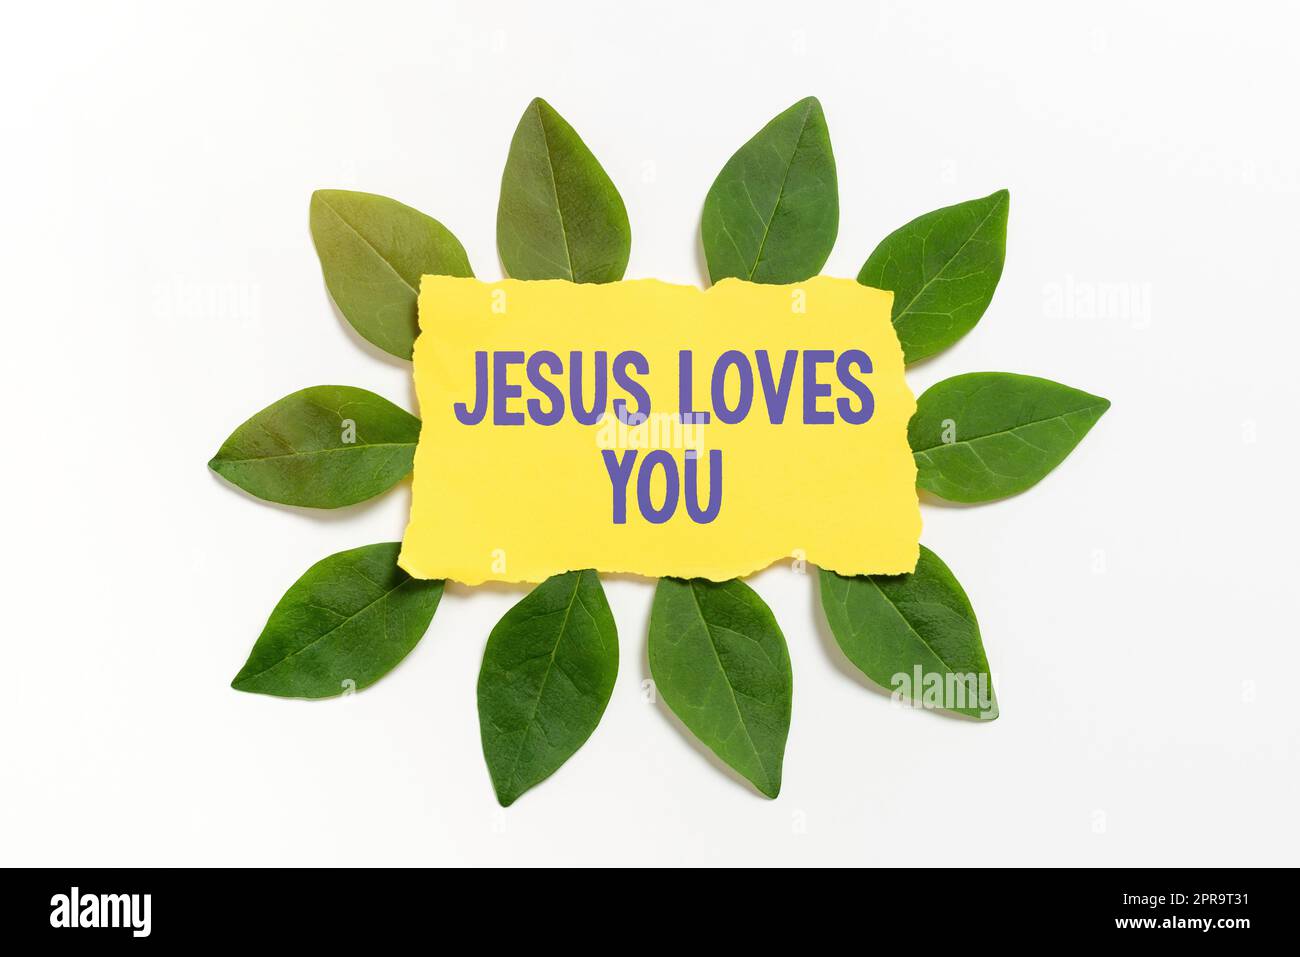 Die Inspiration zeigt das Zeichen Jesus liebt dich. Die Geschäftsübersicht glaubt an den Herrn, dass der Glaube religiöse Person Blankfarbpapier mit Blättern für die Einladungskarte umgeben ist. Stockfoto